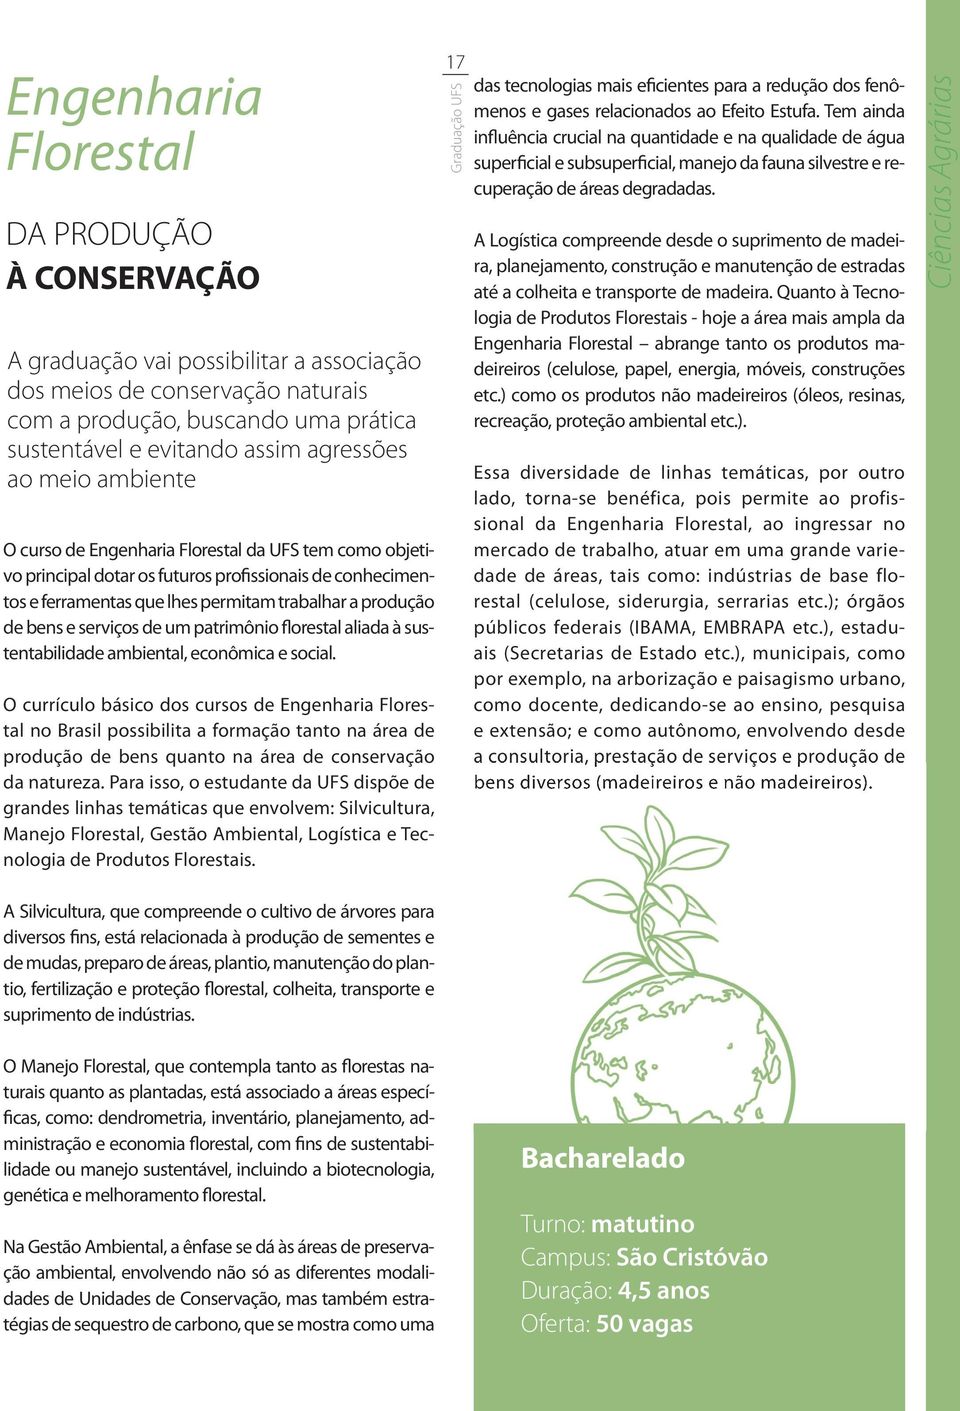 serviços de um patrimônio florestal aliada à sustentabilidade ambiental, econômica e social.